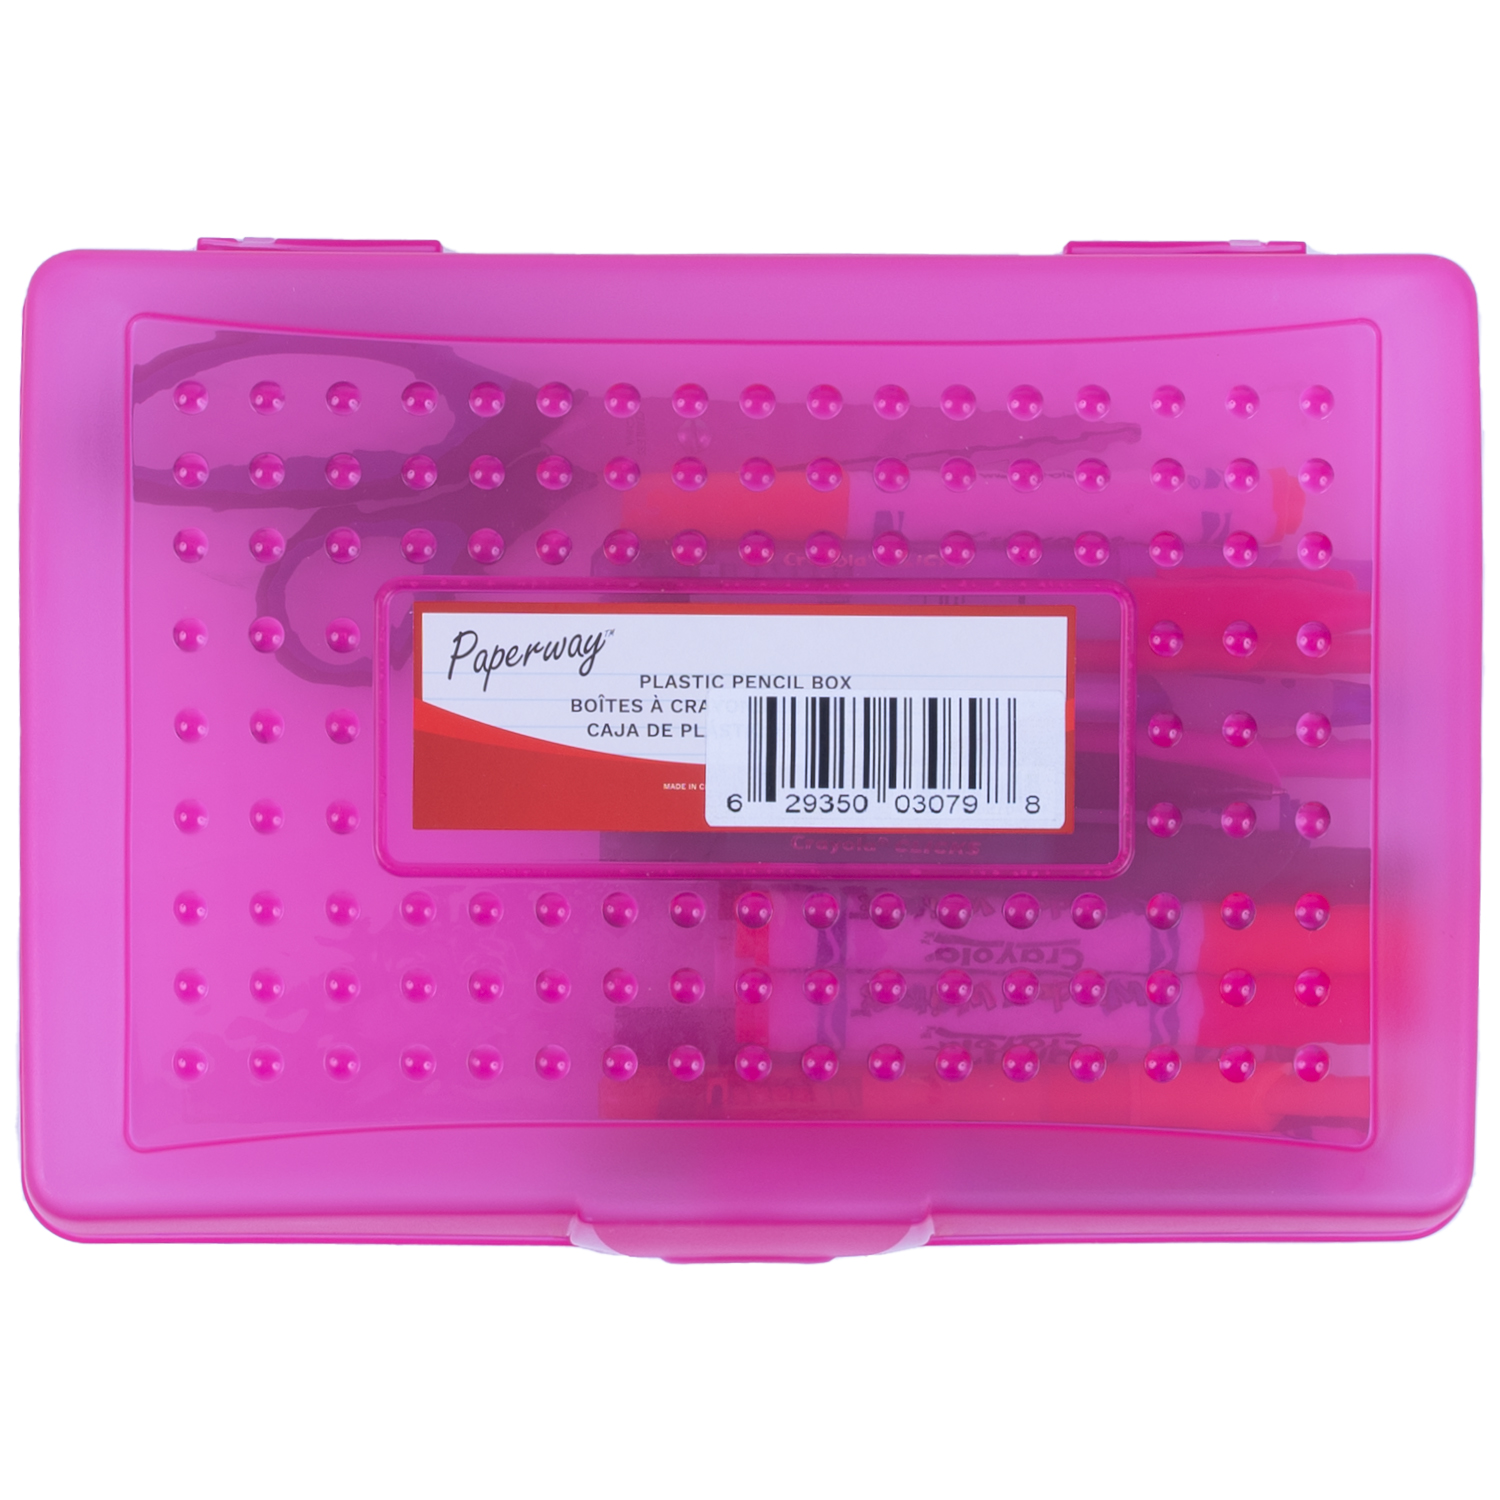 Multipurpose plastic pencil case - Pink